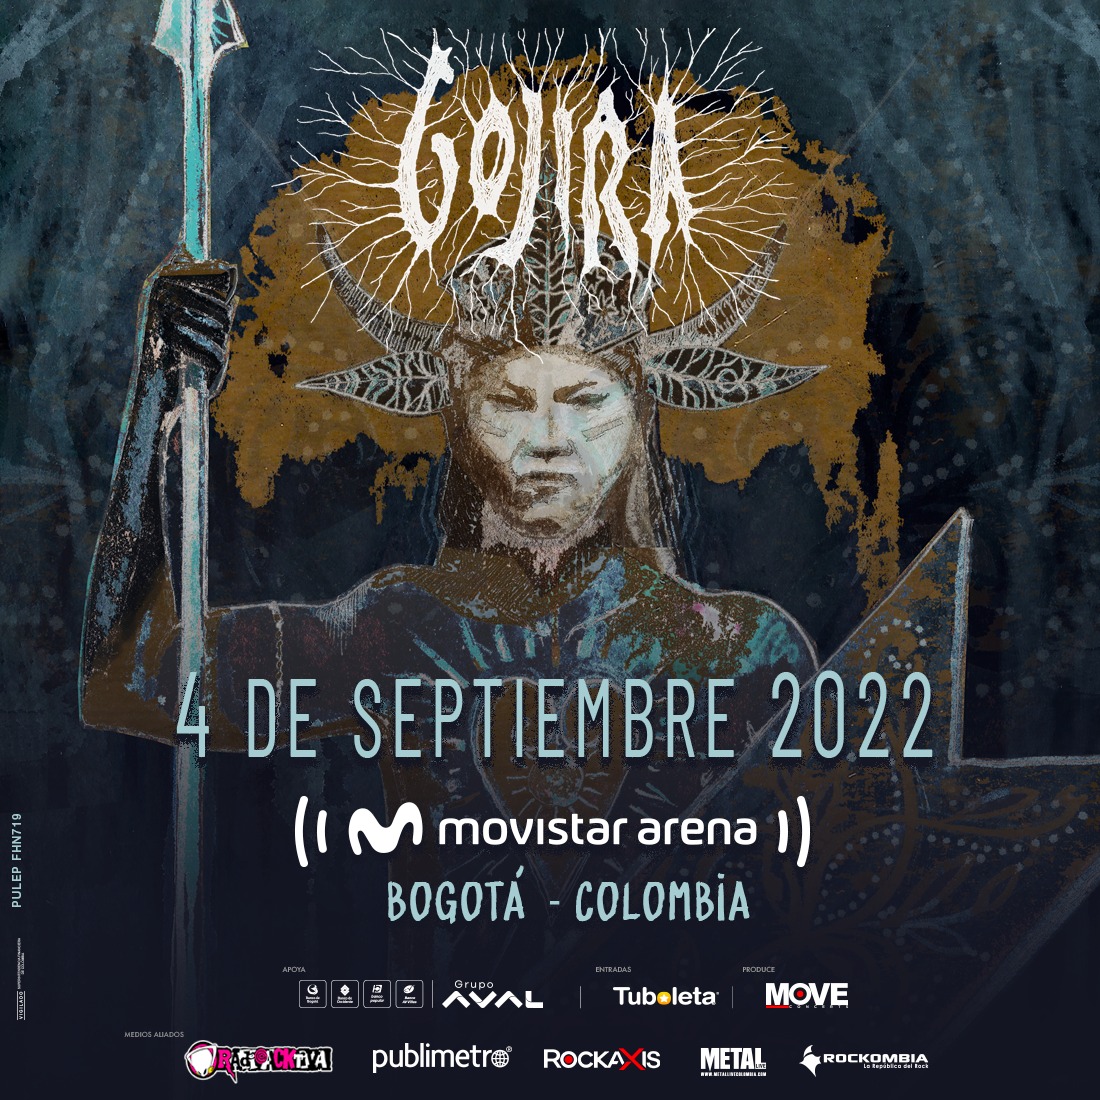 Gojira en Colombia 2022 - A pocas semanas del debut de GOJIRA en Colombia